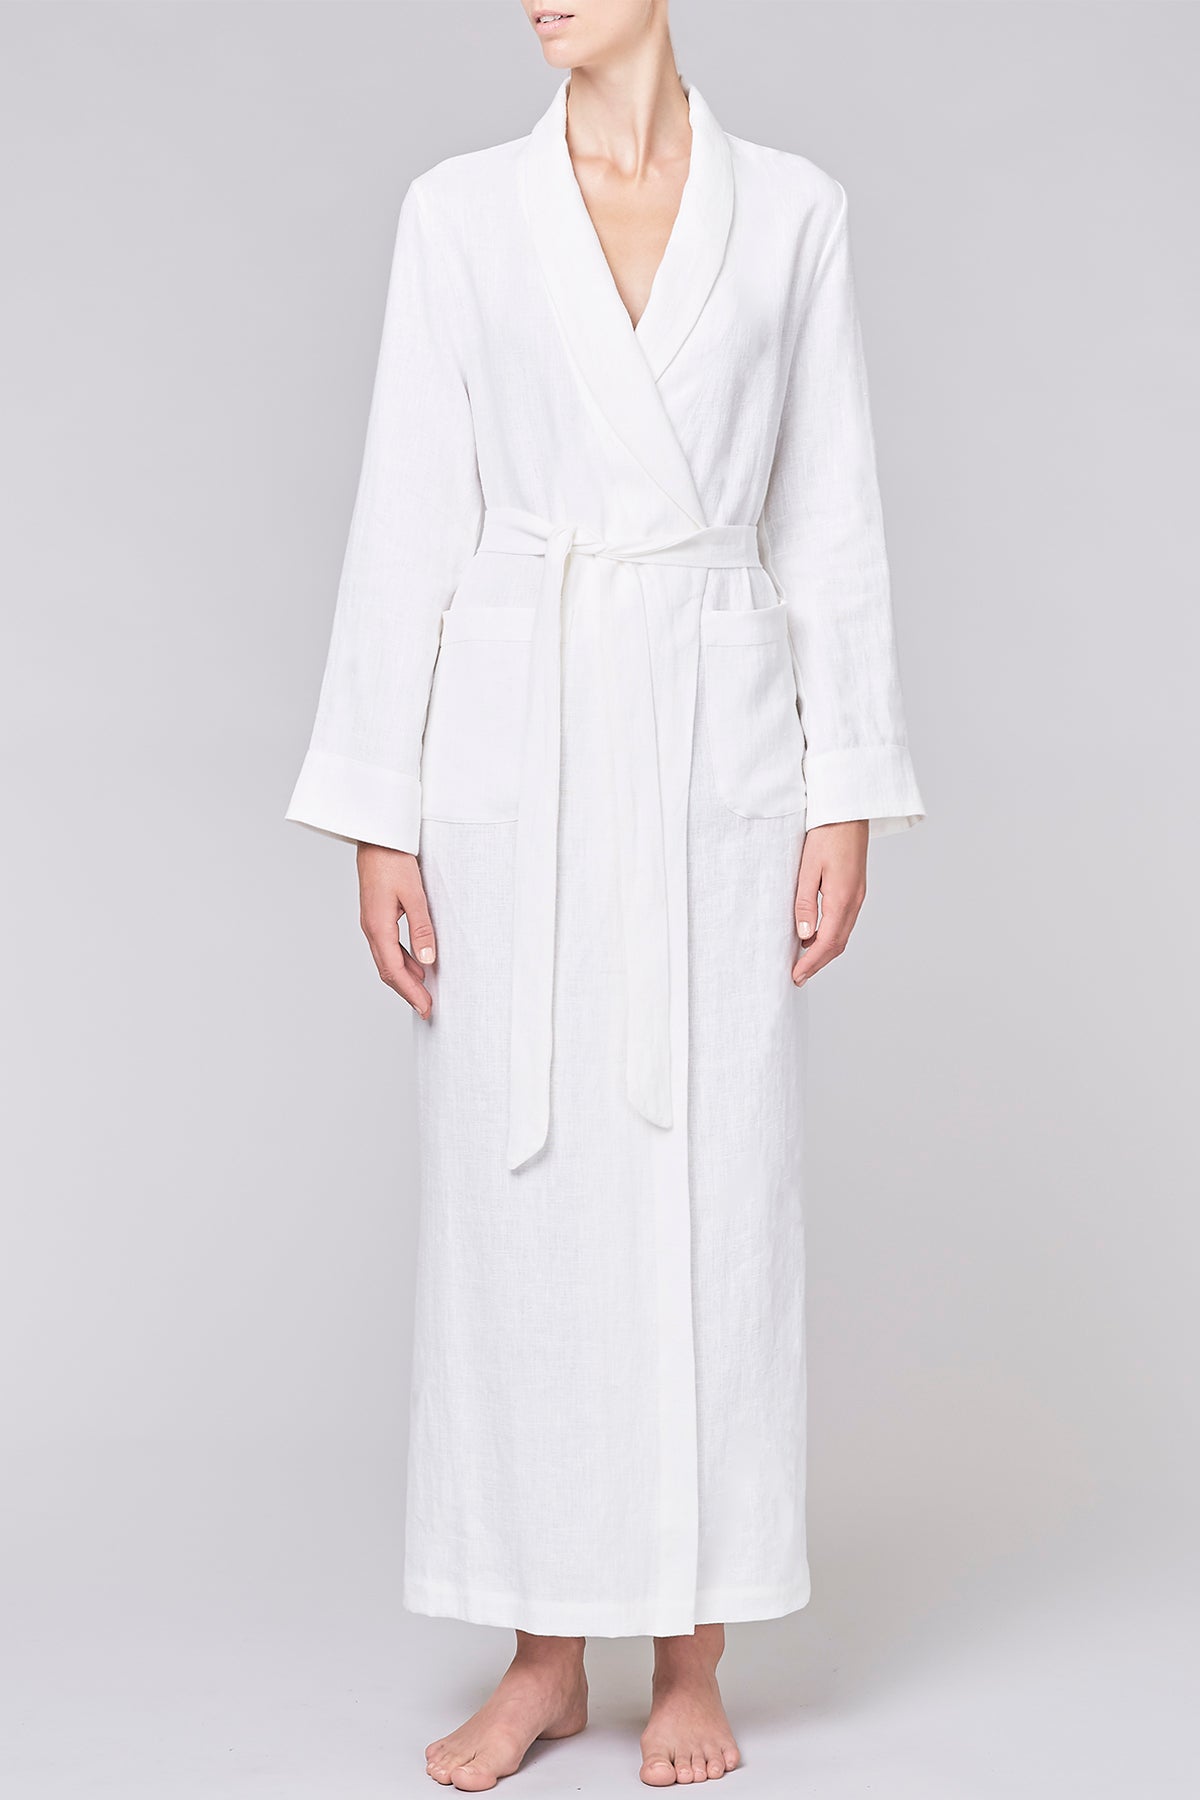 long-length linen white robe